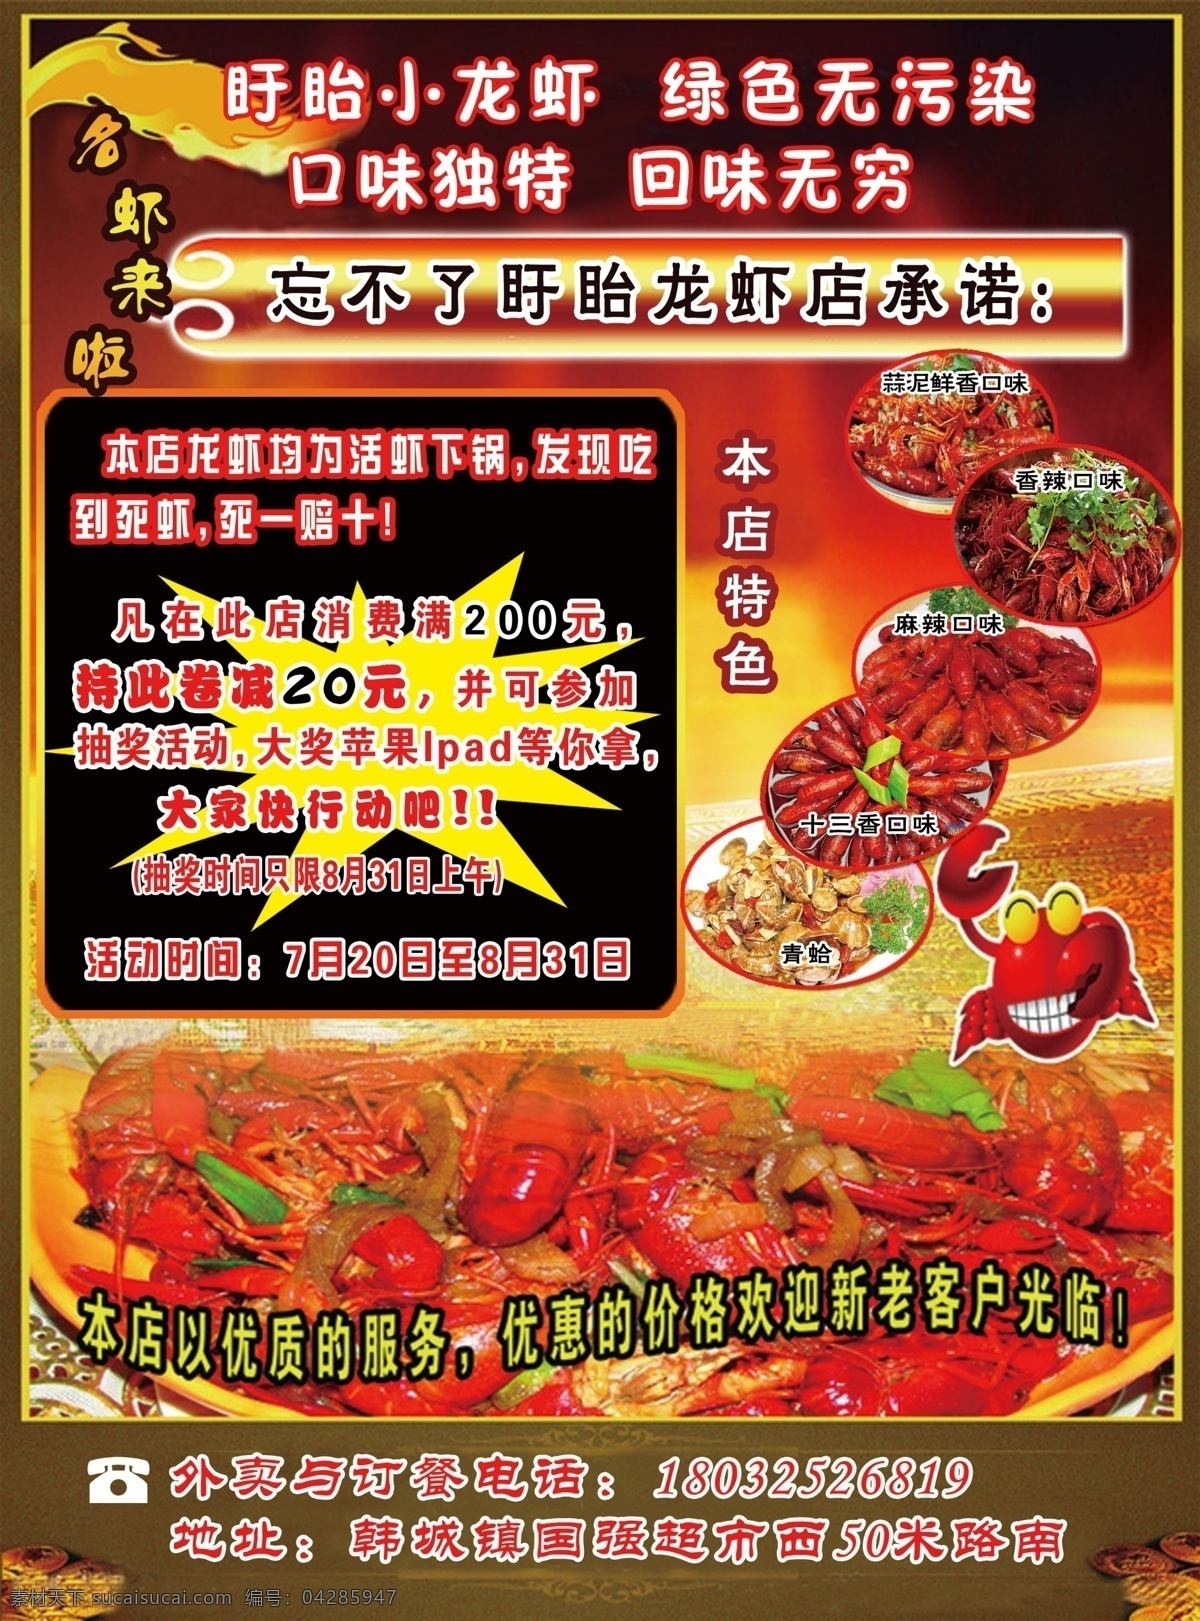 小 龙虾 店 宣传单 饭店 小龙虾 彩页 餐馆 dm宣传单 广告设计模板 源文件